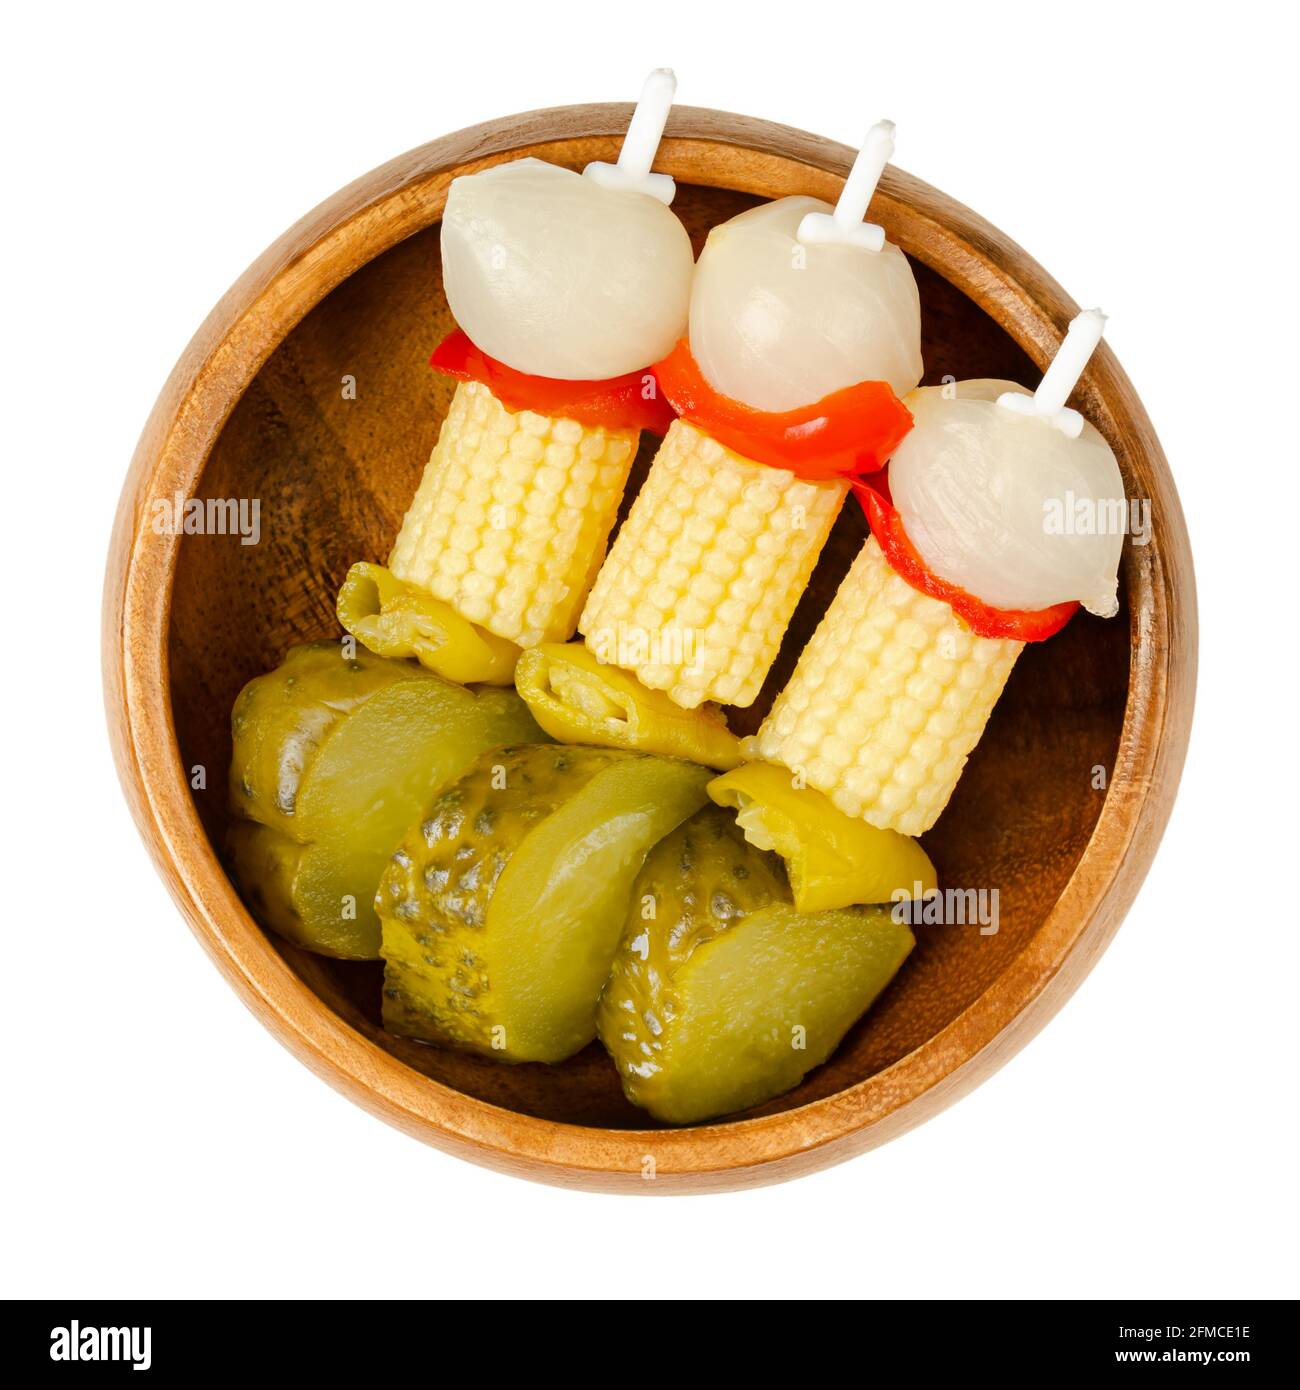 Brochetas de fiesta de verduras en un tazón de madera. Verduras encurtidas en brochetas de plástico. Cebollas de perlas, pimientos rojos, maíz, chiles verdes y gherkins Foto de stock